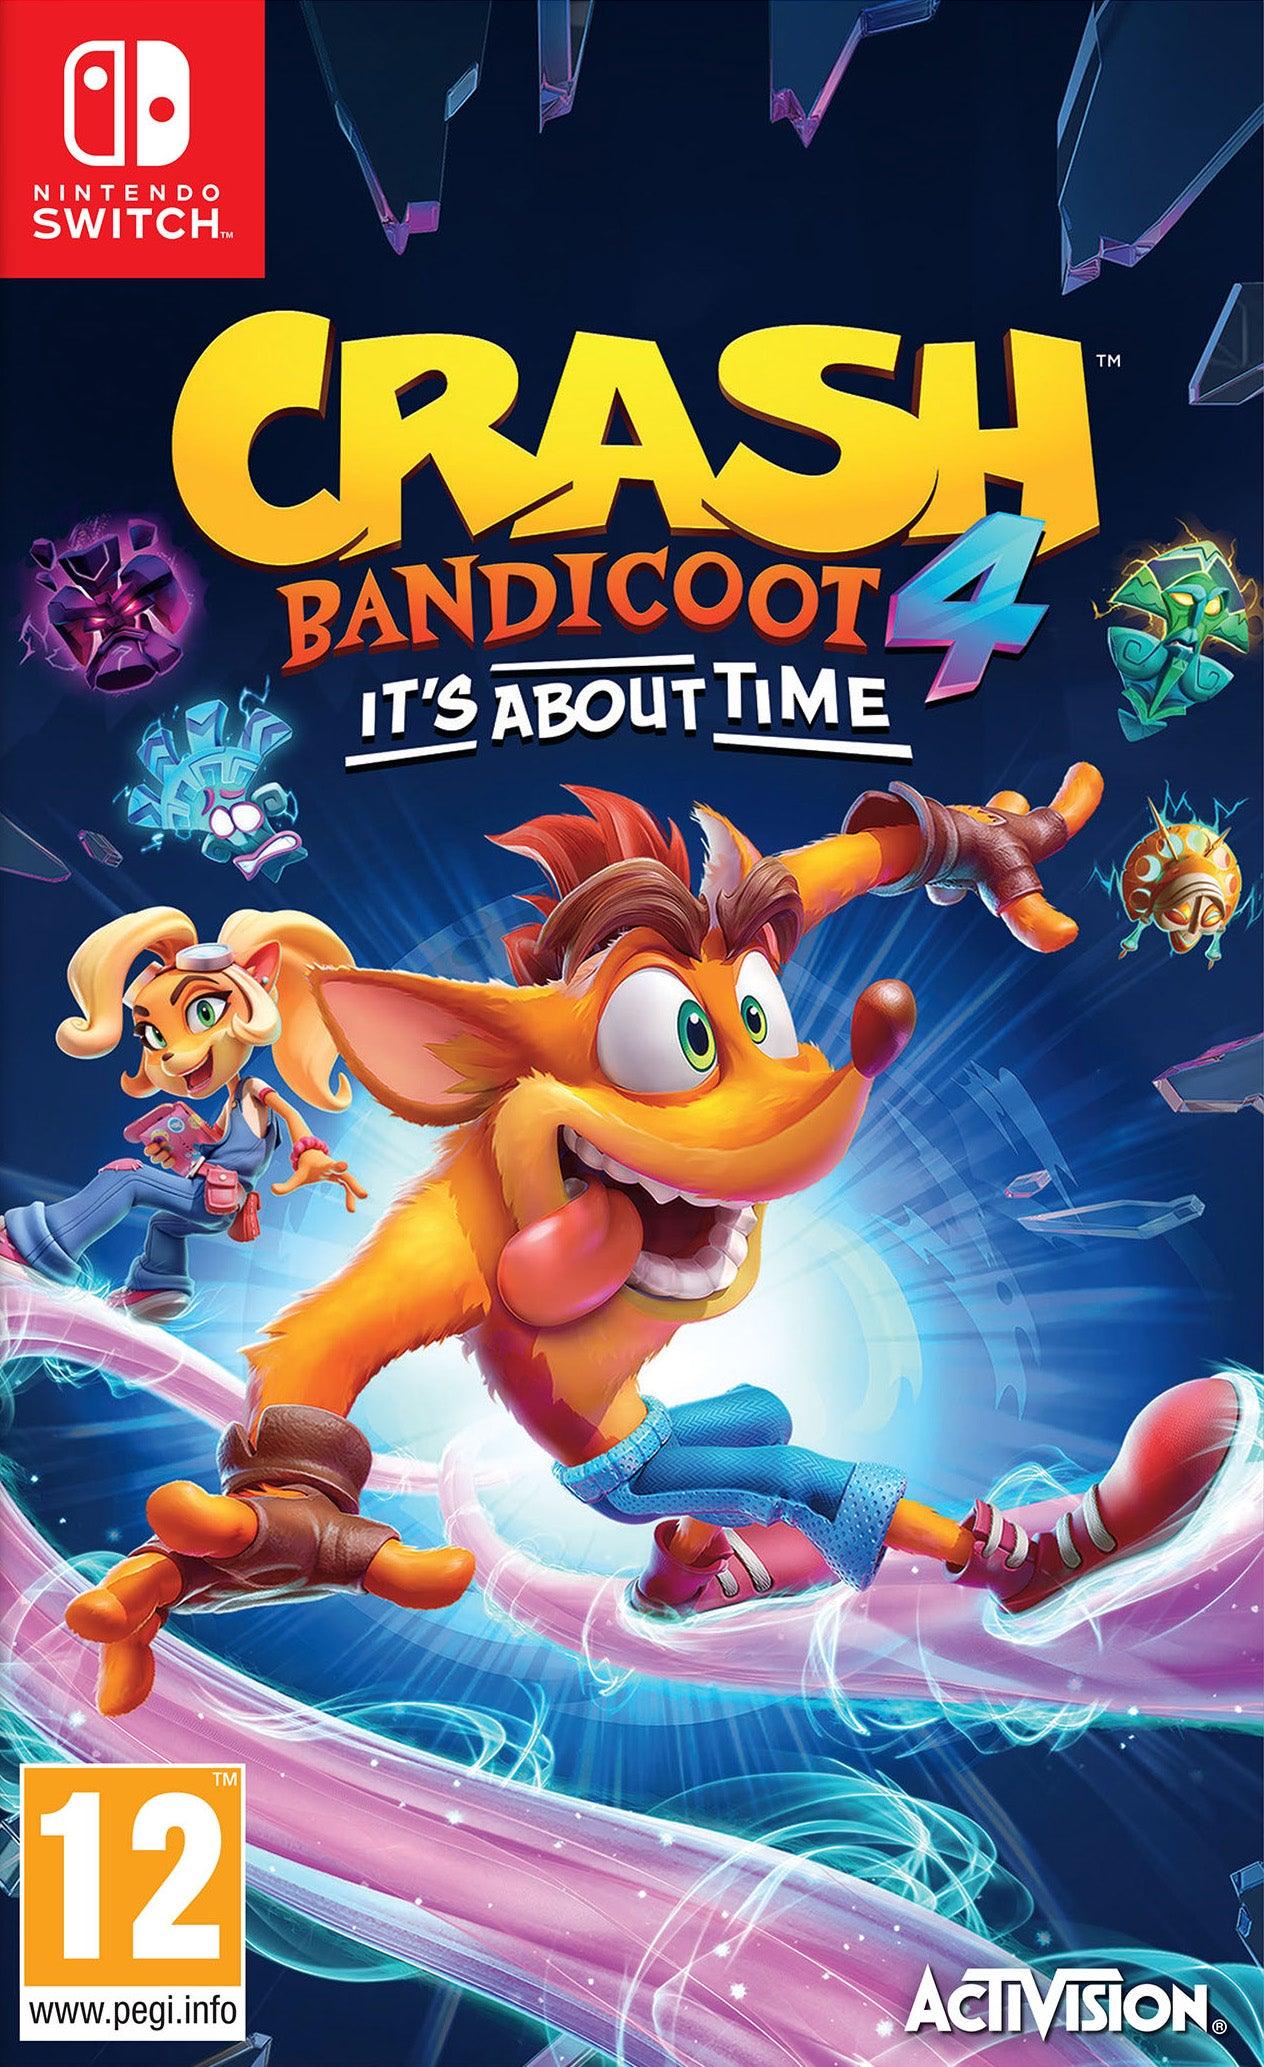 Crash Bandicoot 4 Iat - Want a New Gadget